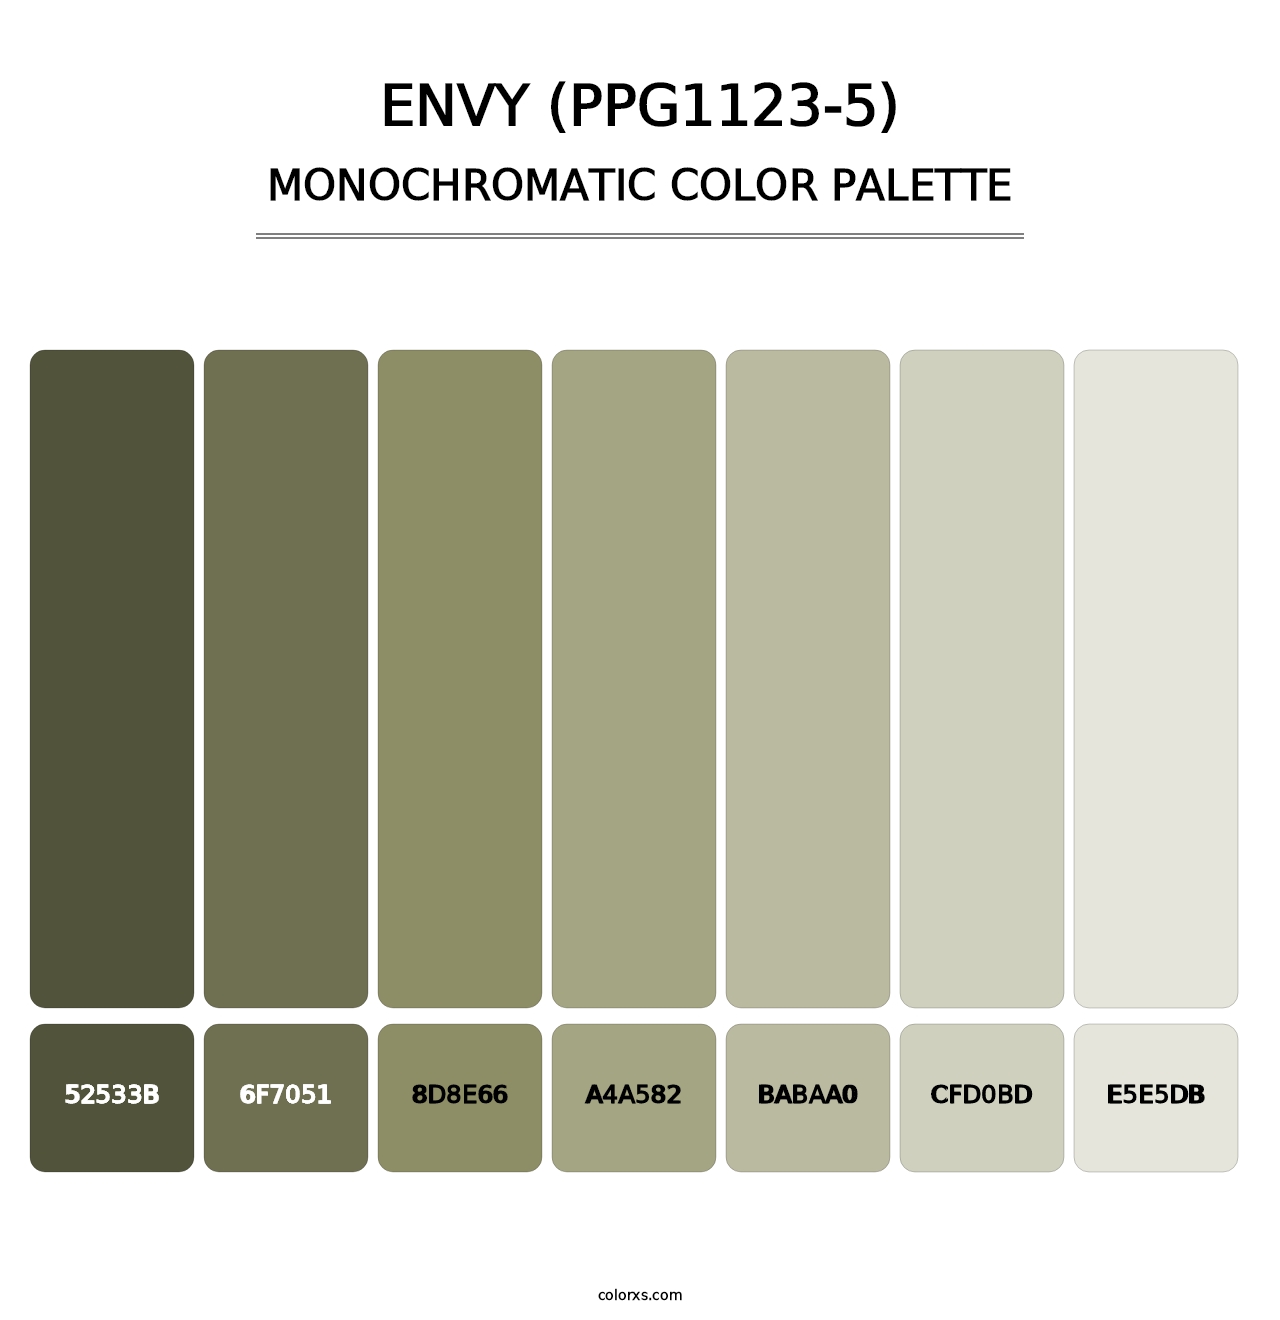 Envy (PPG1123-5) - Monochromatic Color Palette